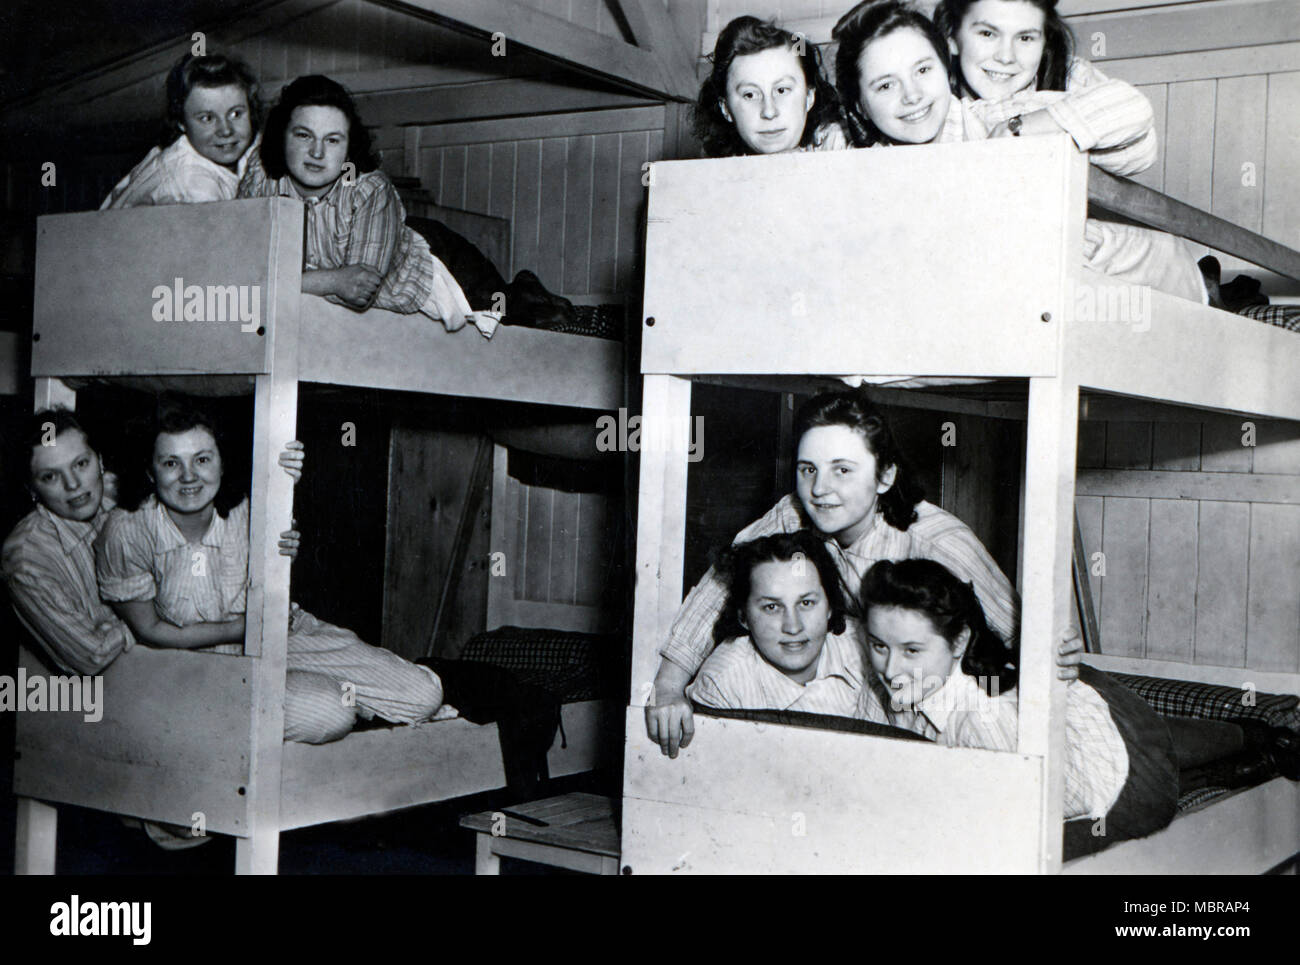 Bund Deutscher Mädel (BDM), parte de las Juventudes Hitlerianas para niñas, dormitorio, 1940, Alemania Foto de stock